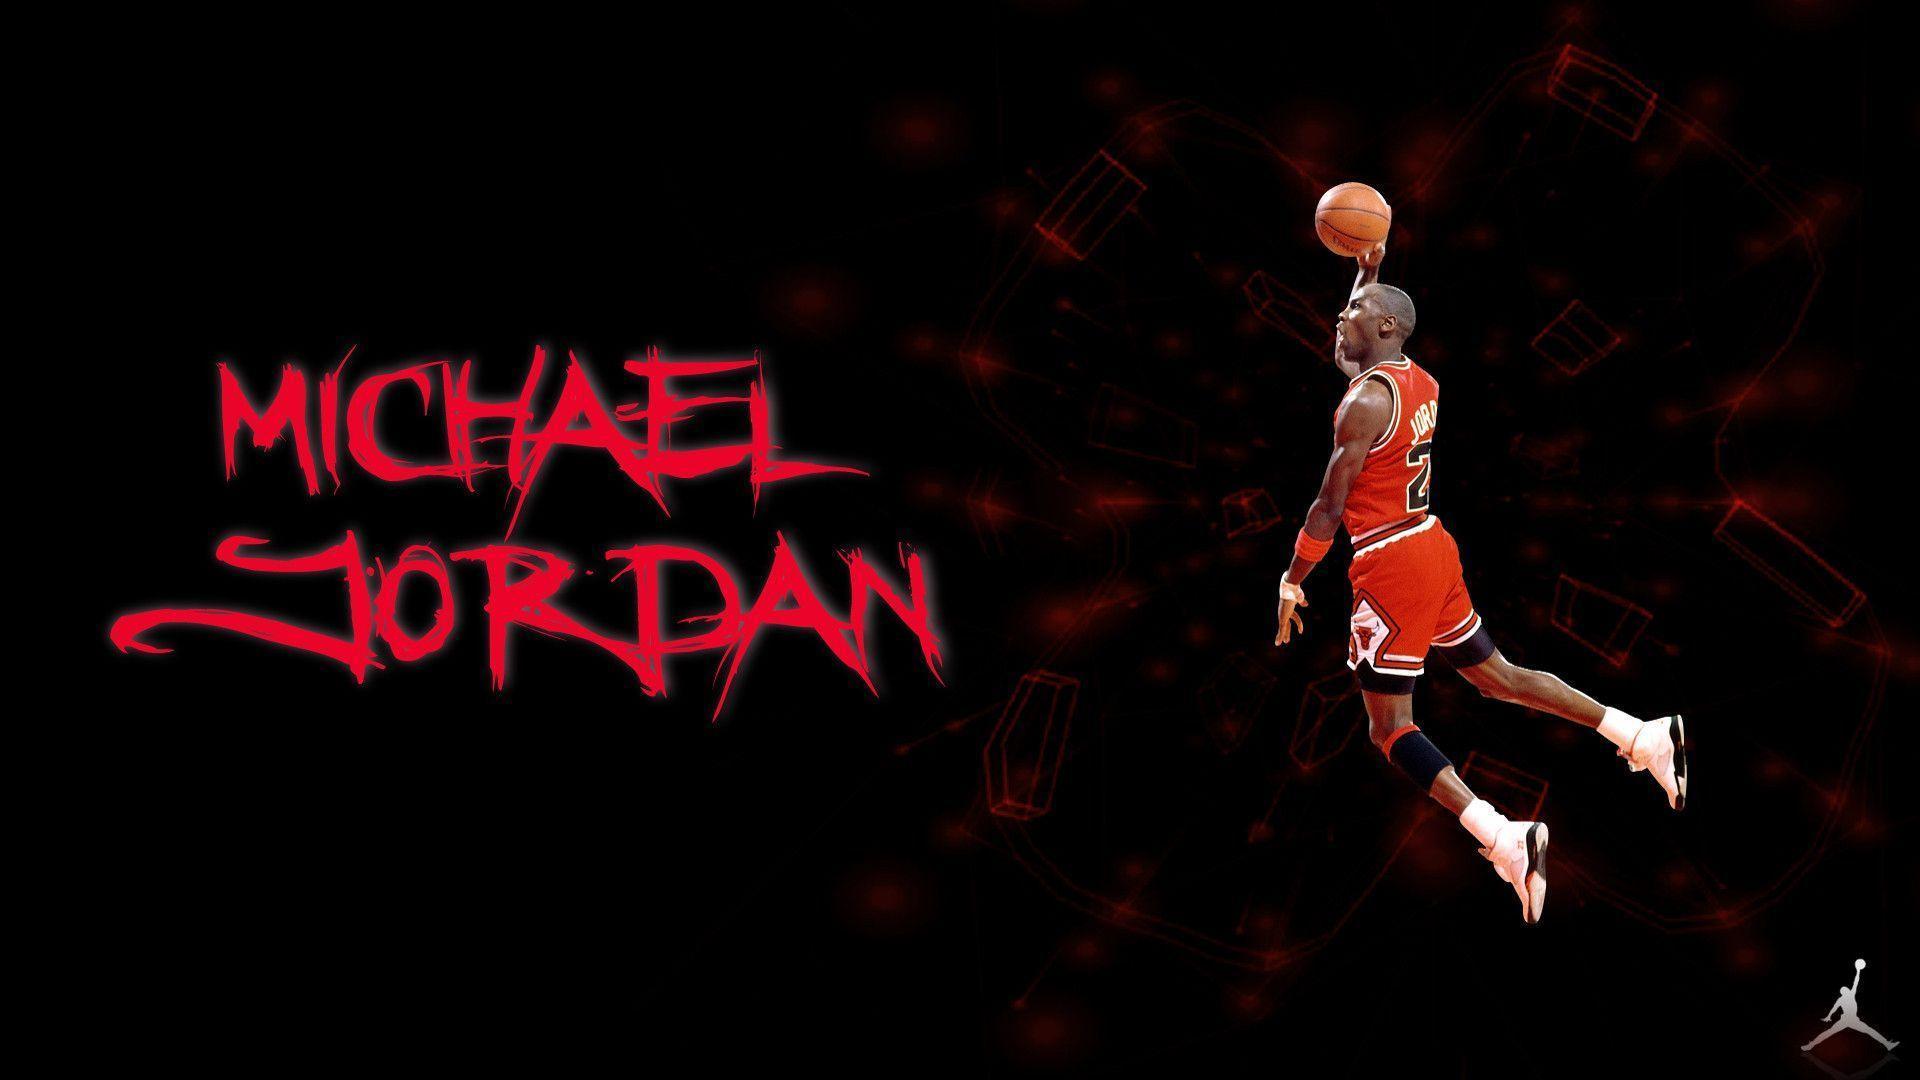 Michael Jordan Symbol Wallpaper Image 6 HD Wallpaper. Hdimges